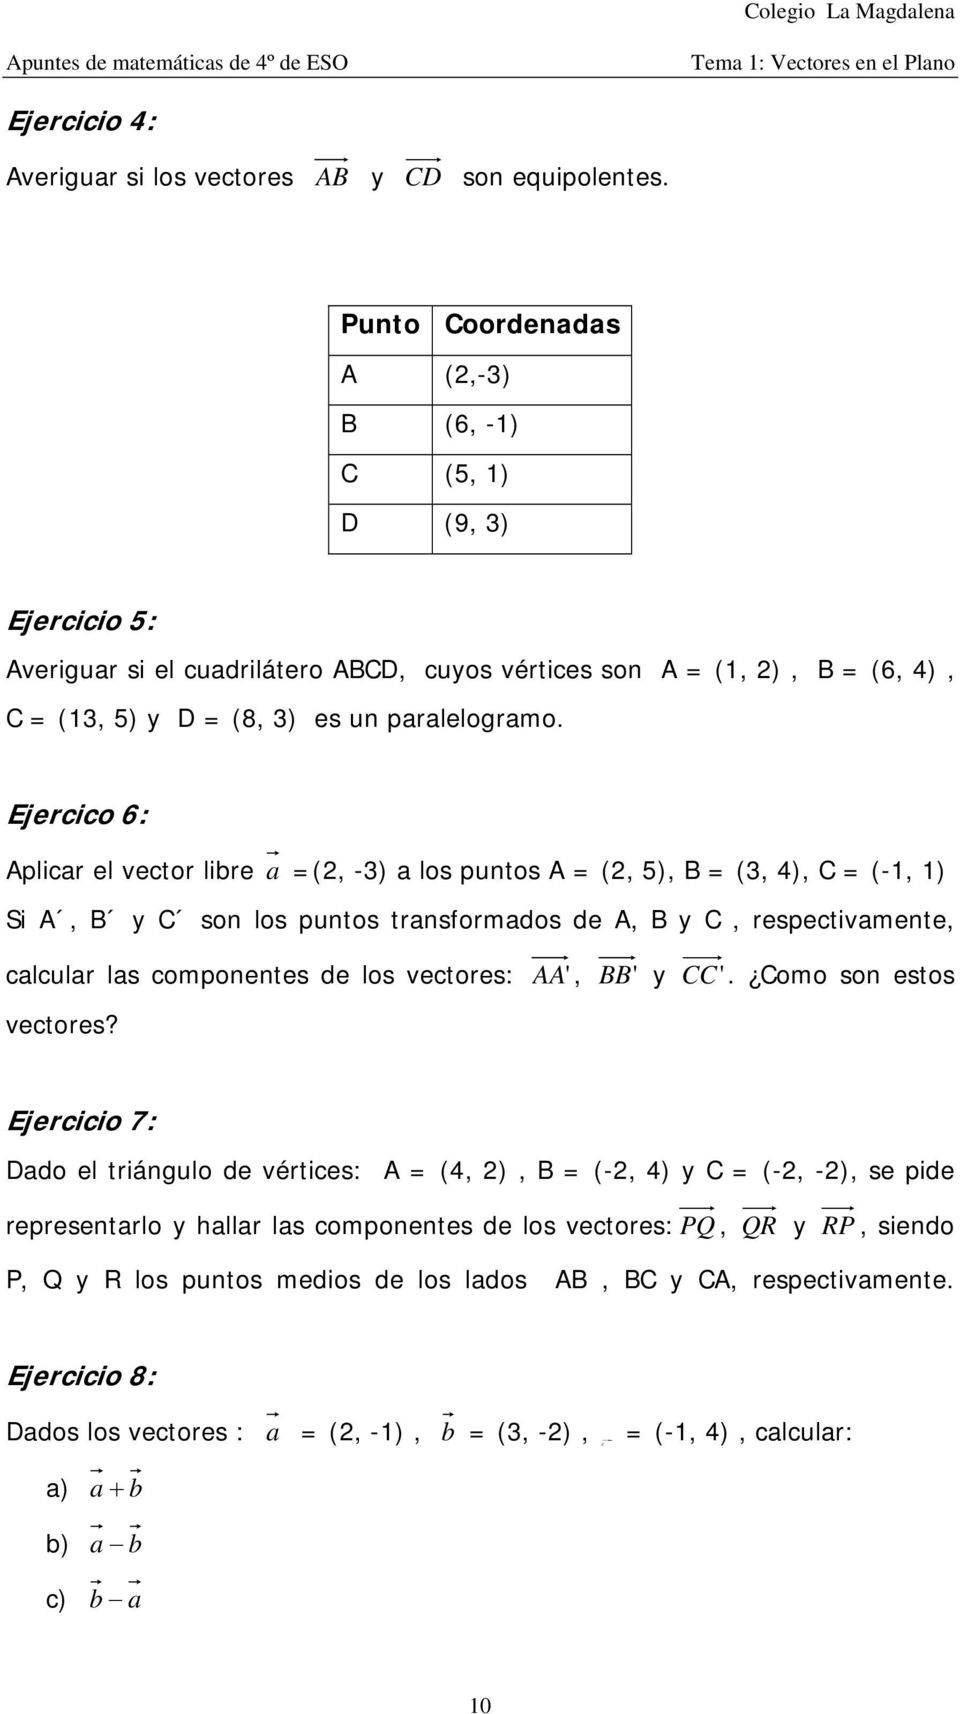 Ejercico 6: Aplicar el vector libre a =(, -3) a los putos A = (, 5), B = (3, 4), C = (-, ) Si A, B y C so los putos trasformados de A, B y C, respectivamete, calcular las compoetes de los vectores: